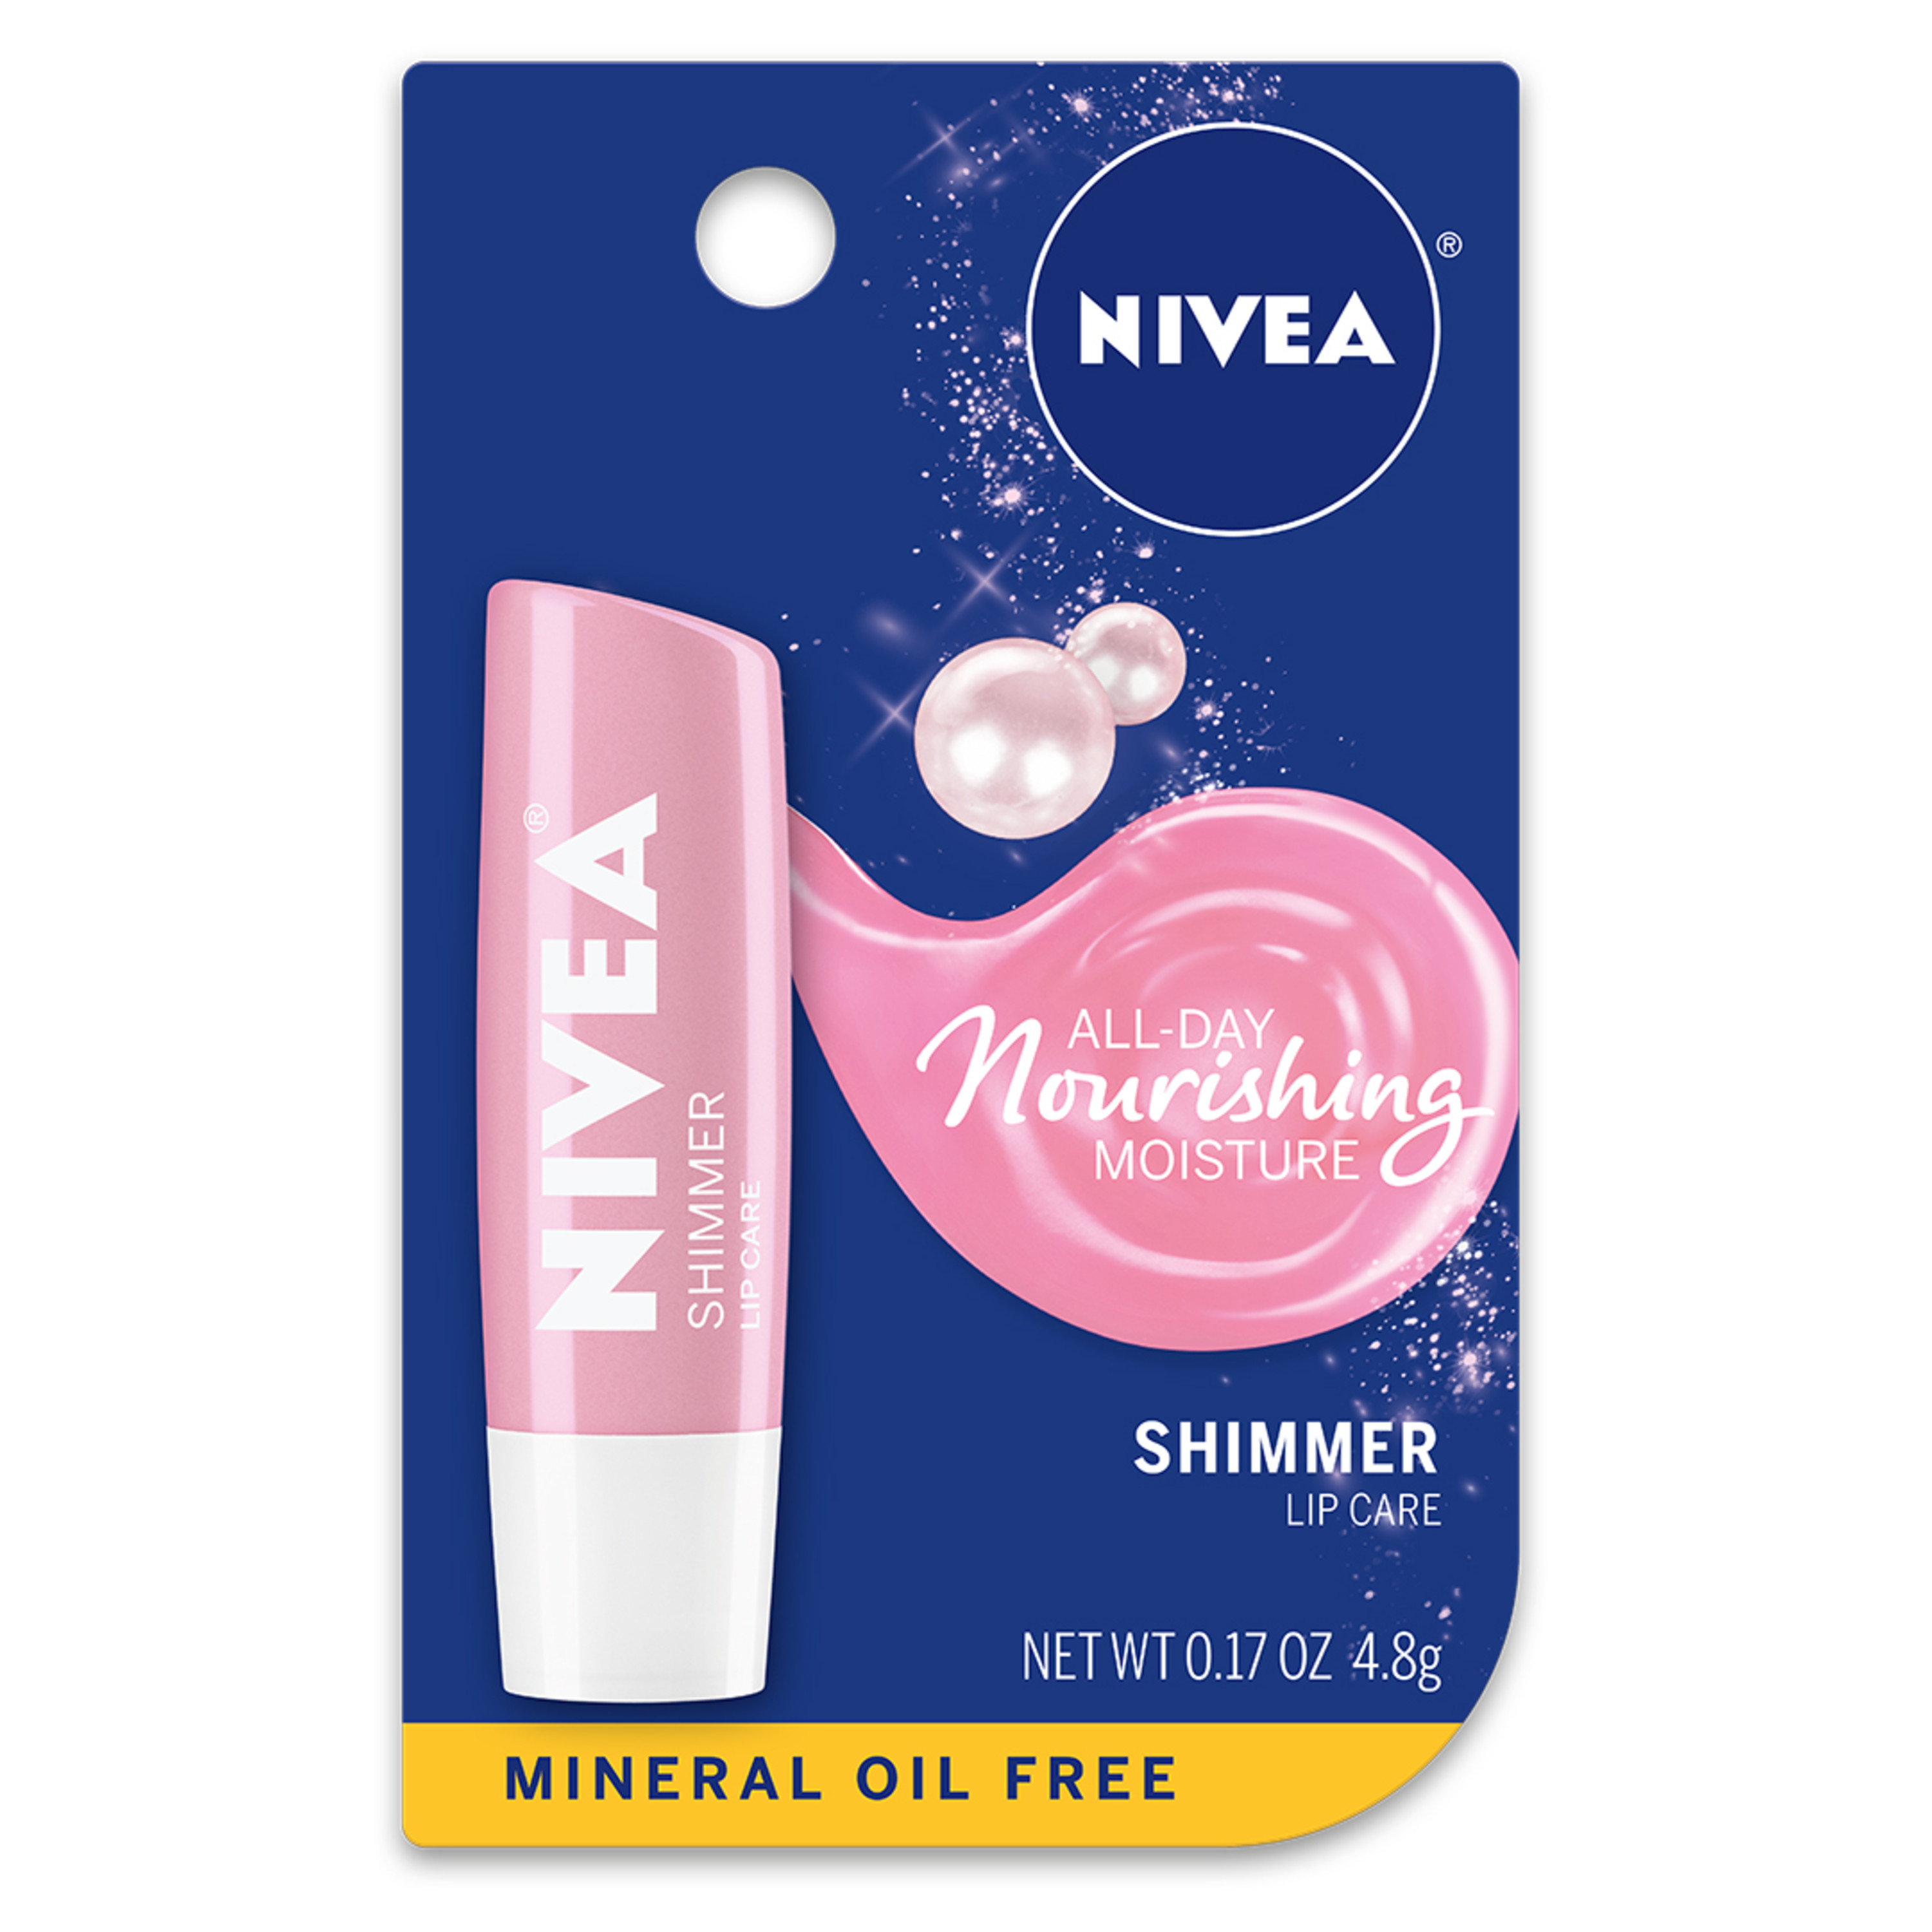 NIVEA Shimmer Lip Care 0.17 oz. Carded Pack - image 1 of 4